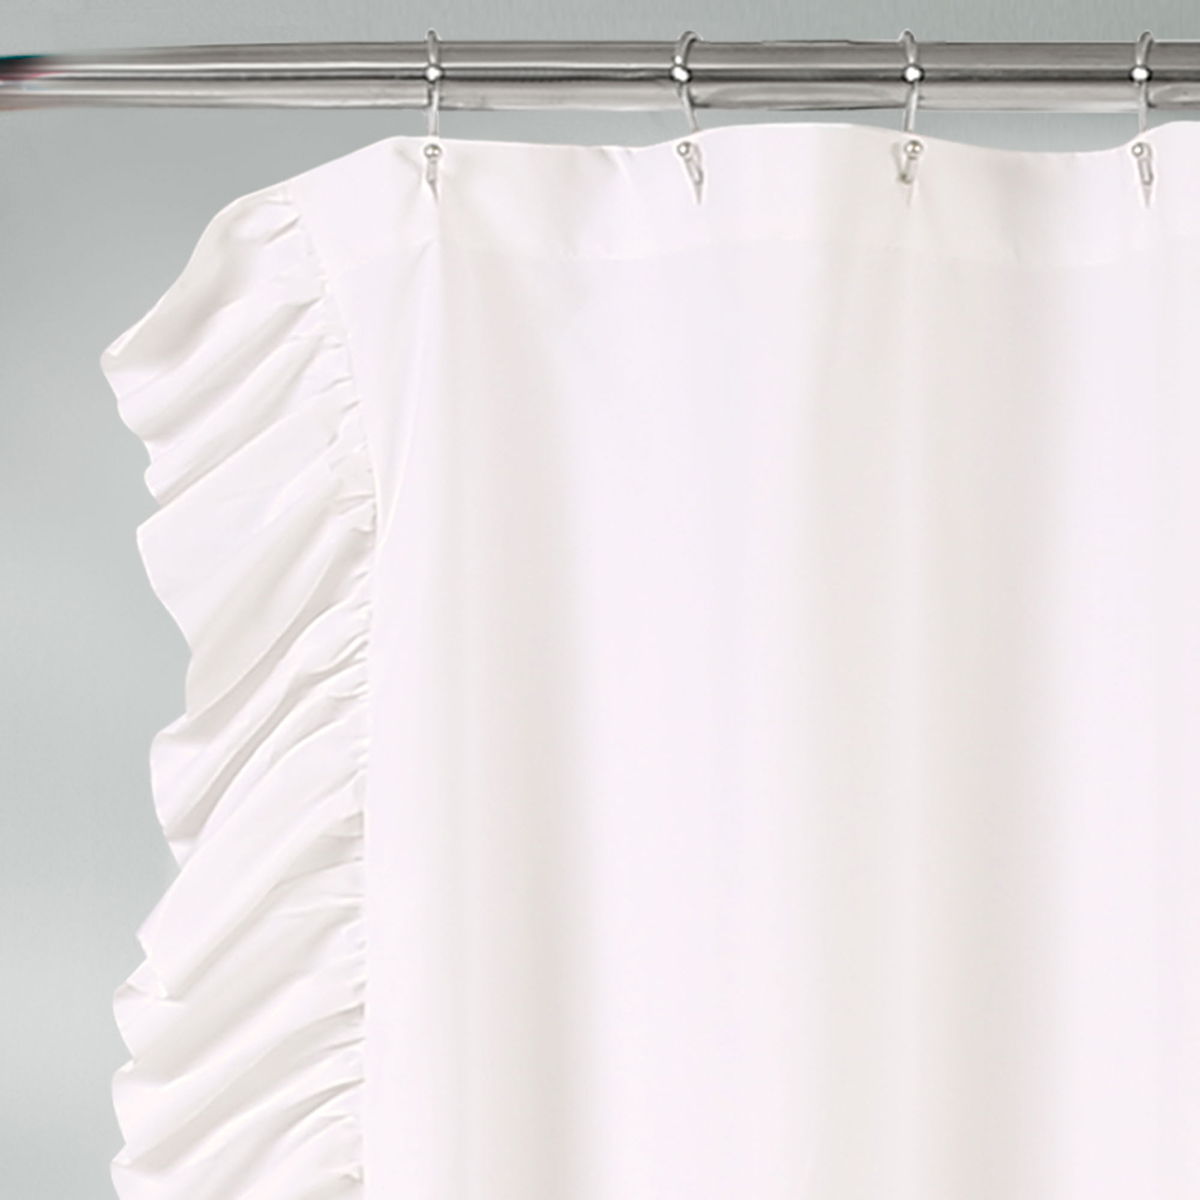 Lush Decor(R) Reyna Shower Curtain